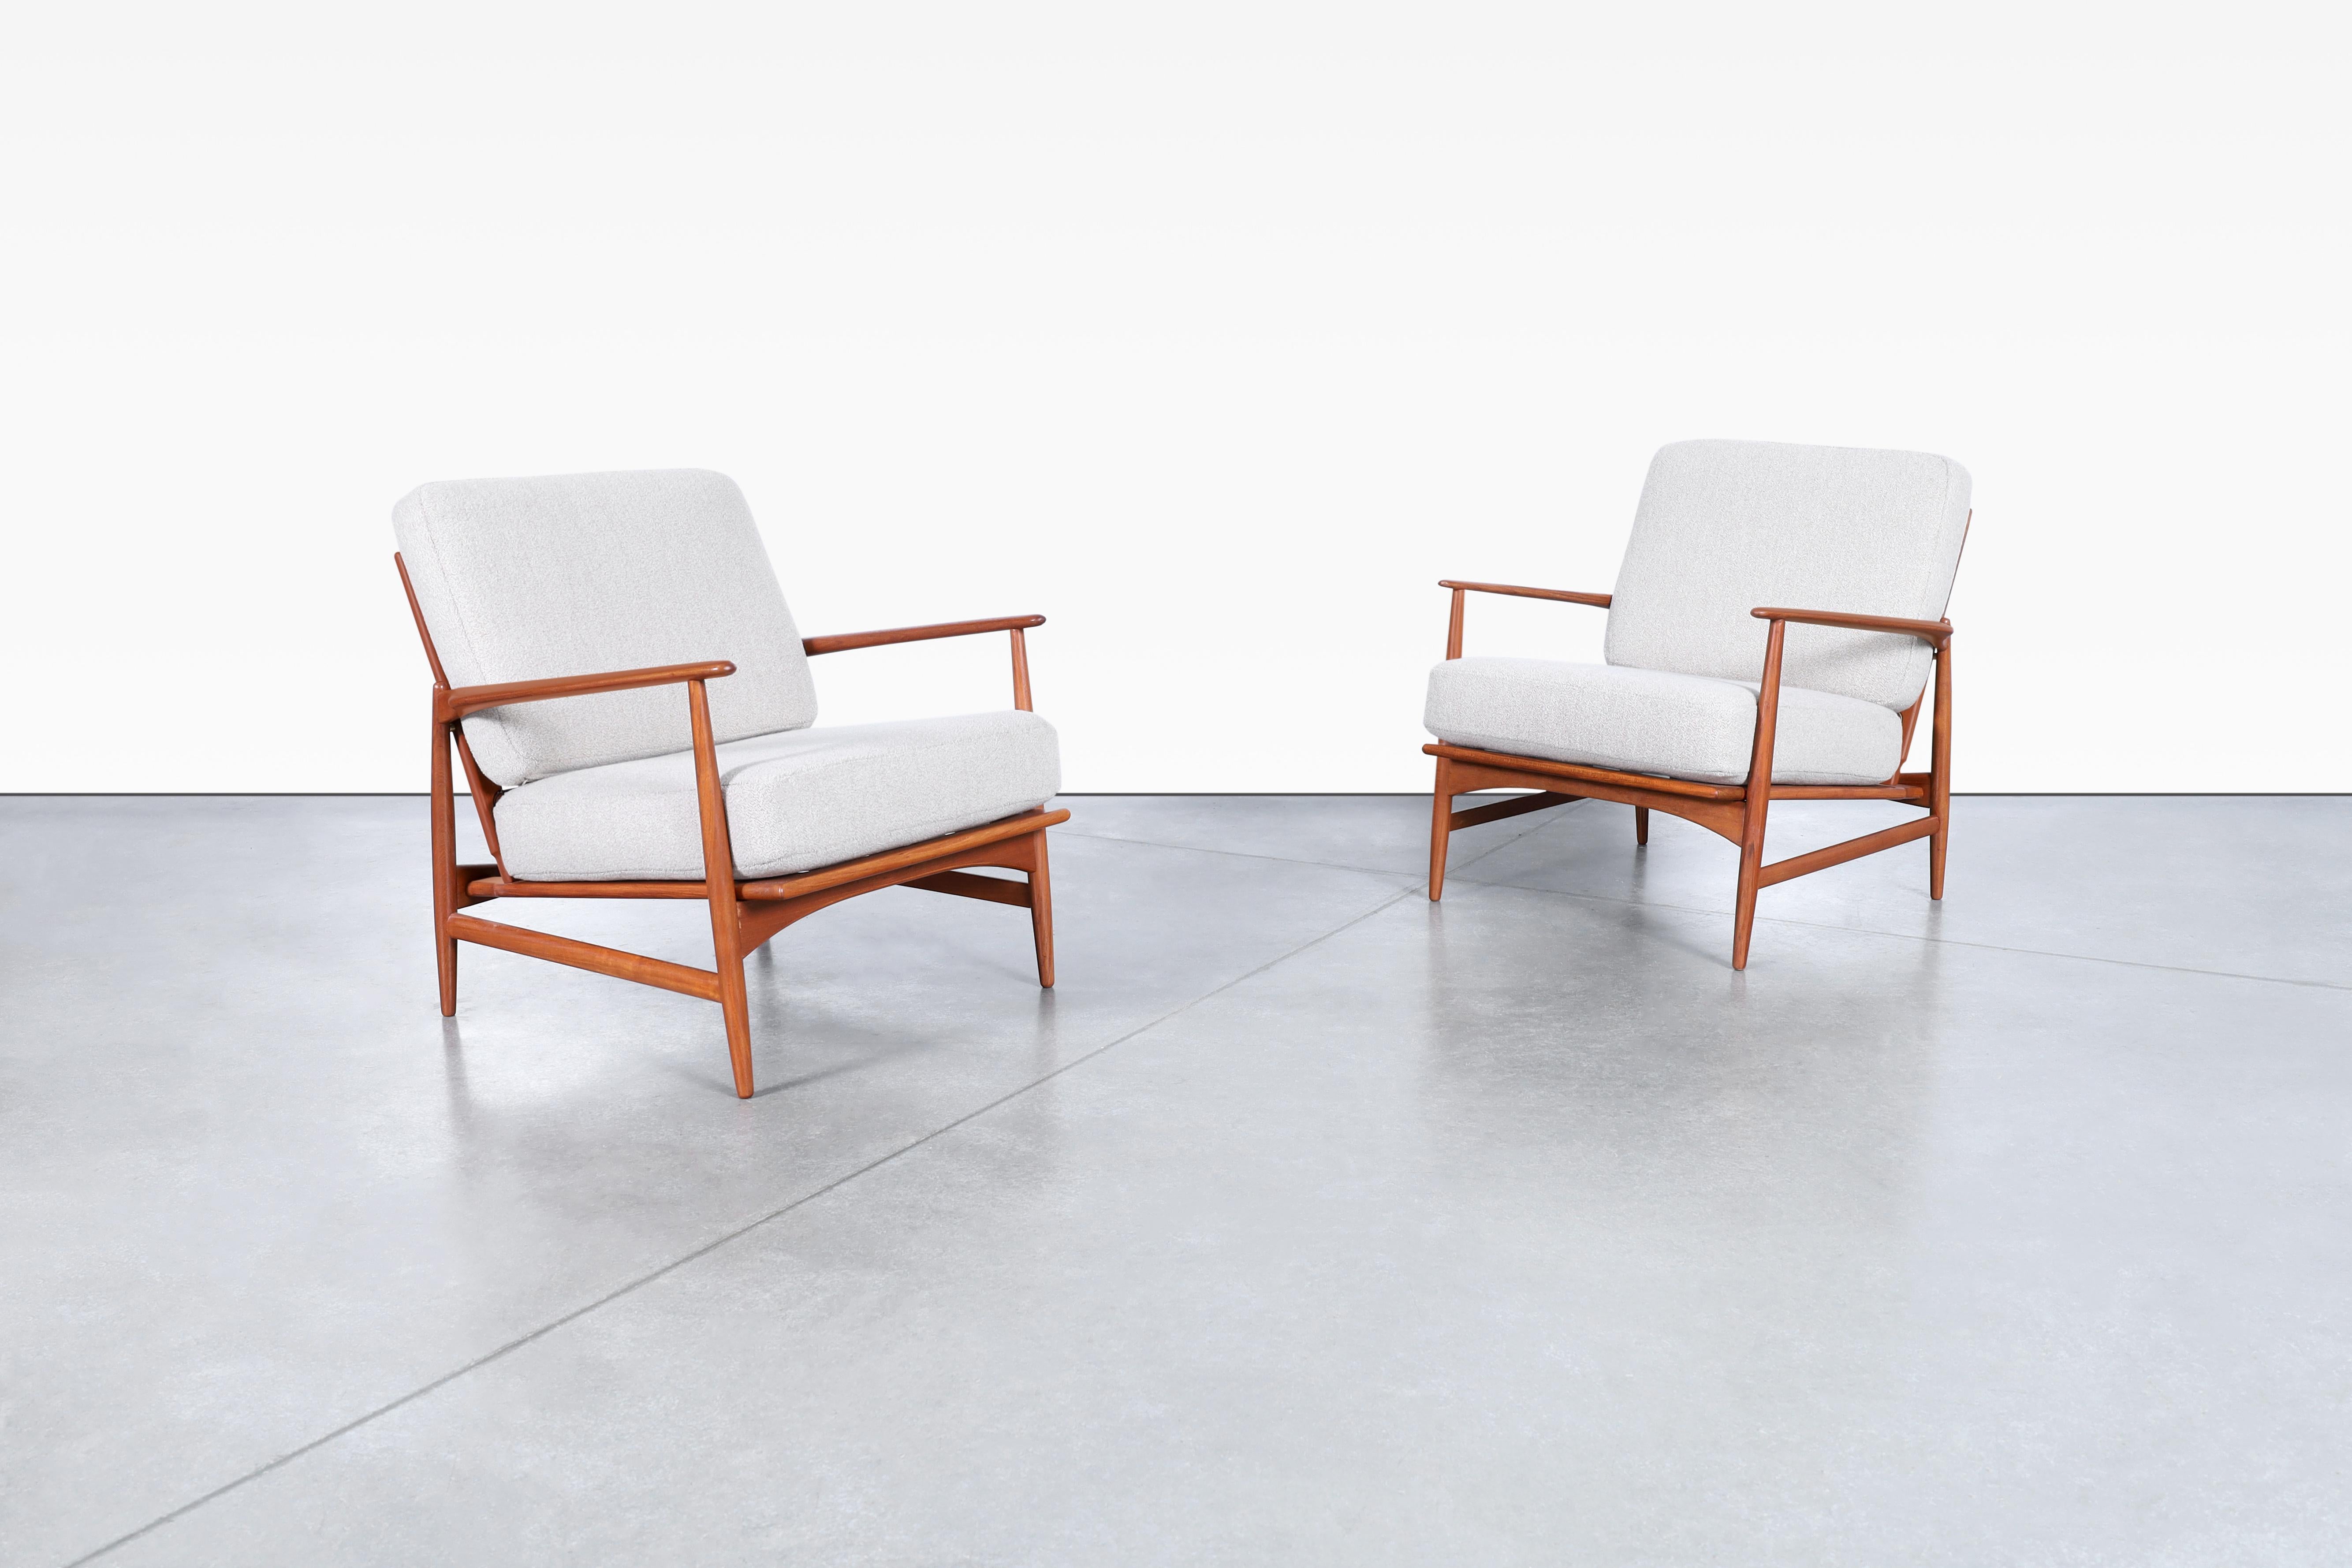 Étonnantes chaises longues danoises modernes en teck conçues par Ib Kofod Larsen pour Selig au Danemark, vers les années 1960. Ces chaises sont vraiment magnifiques ! Le cadre en teck massif fabriqué à la main est conçu de manière experte pour créer